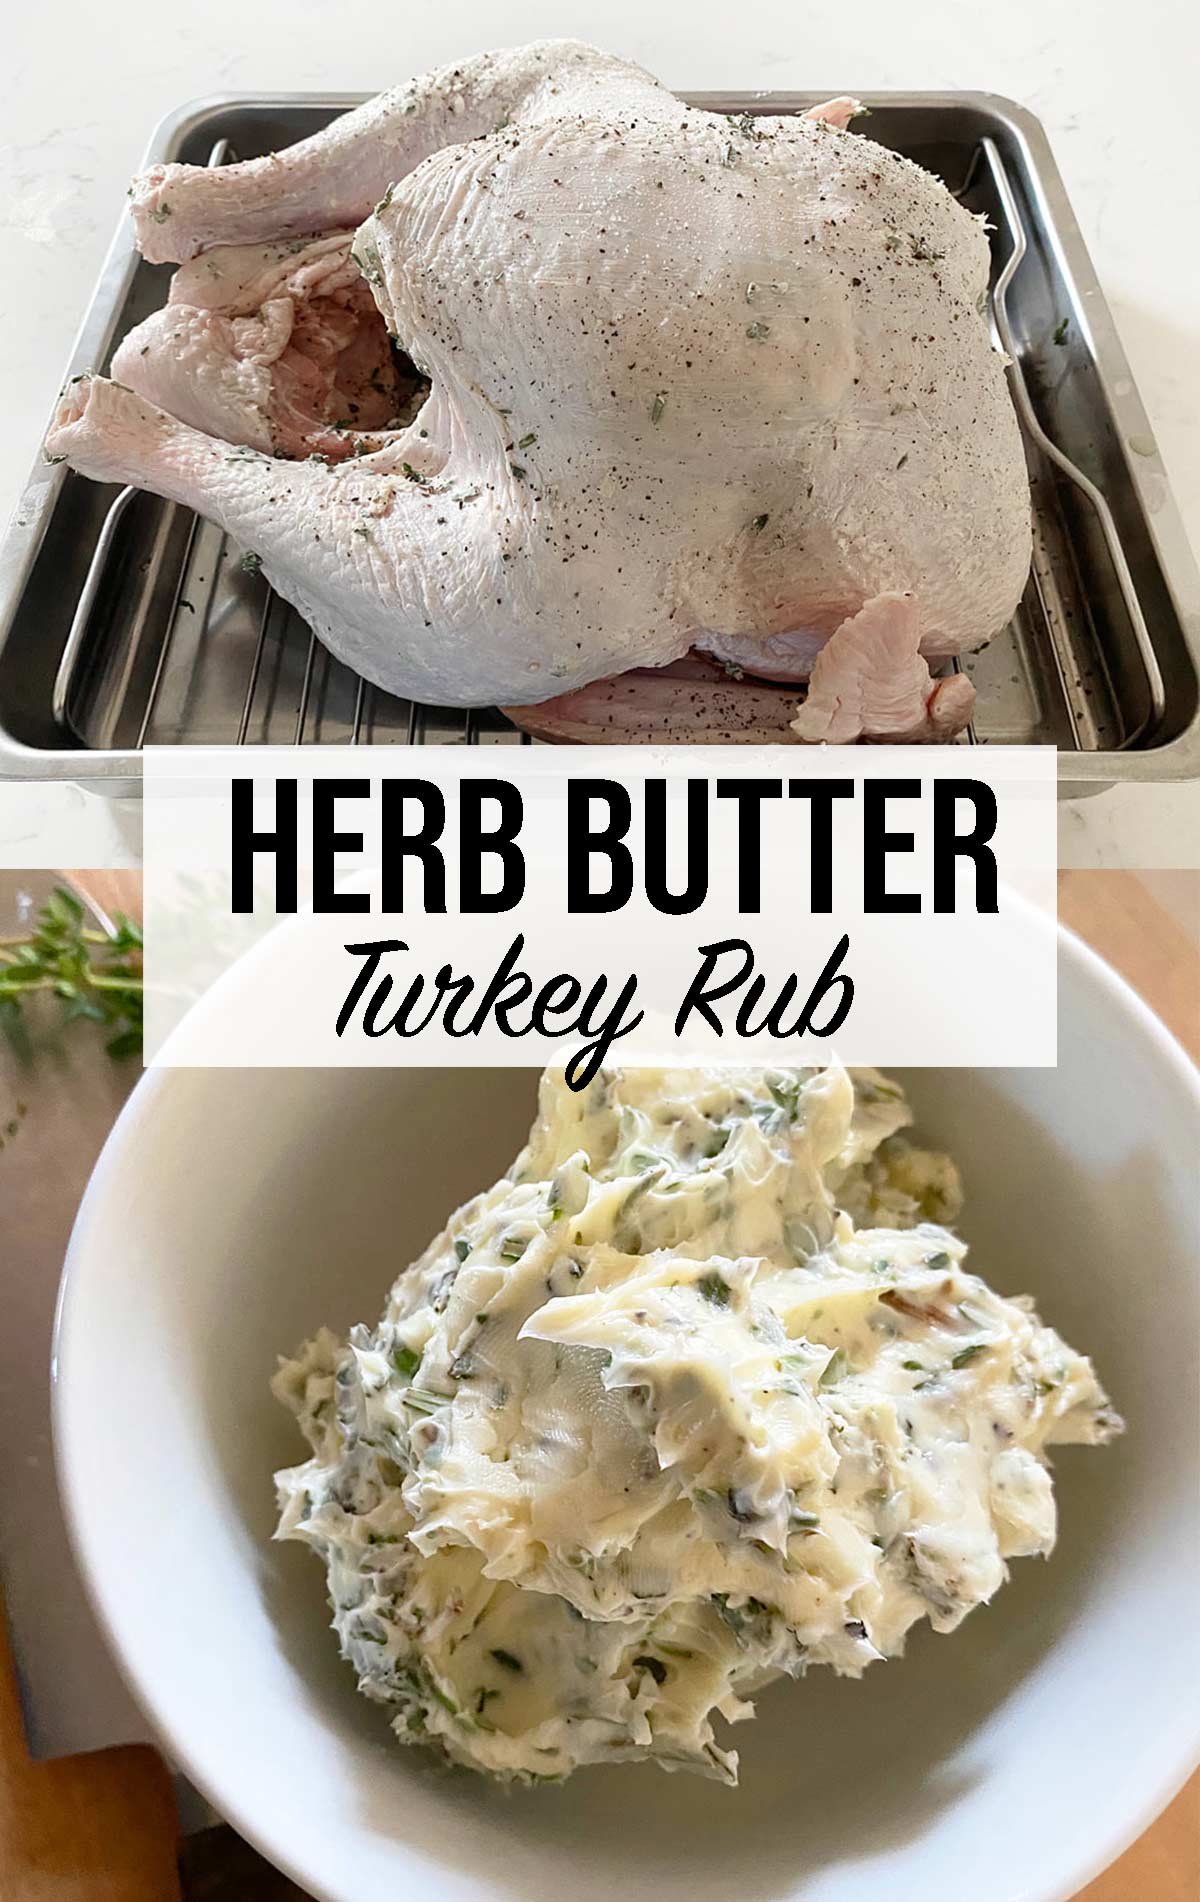 Herb Butter Turkey Rub Weekend Craft 1238